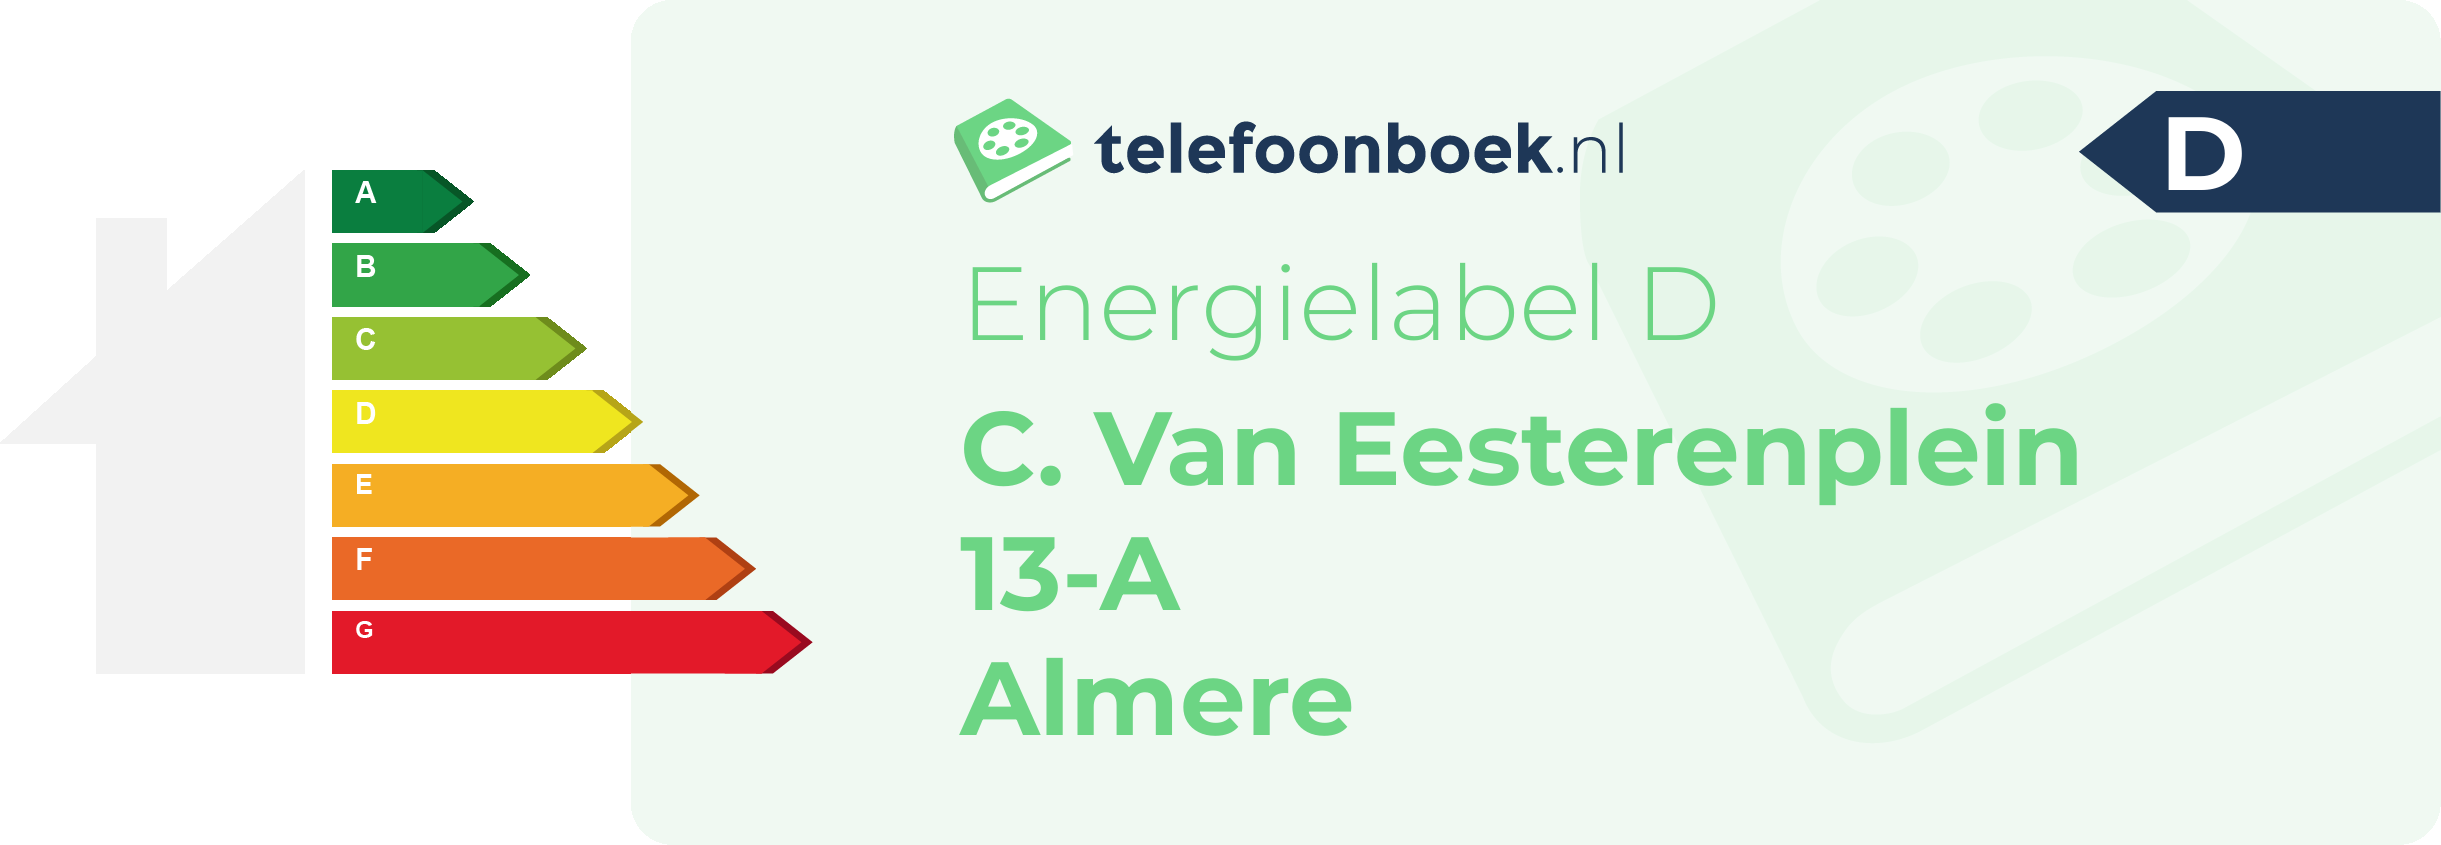 Energielabel C. Van Eesterenplein 13-A Almere